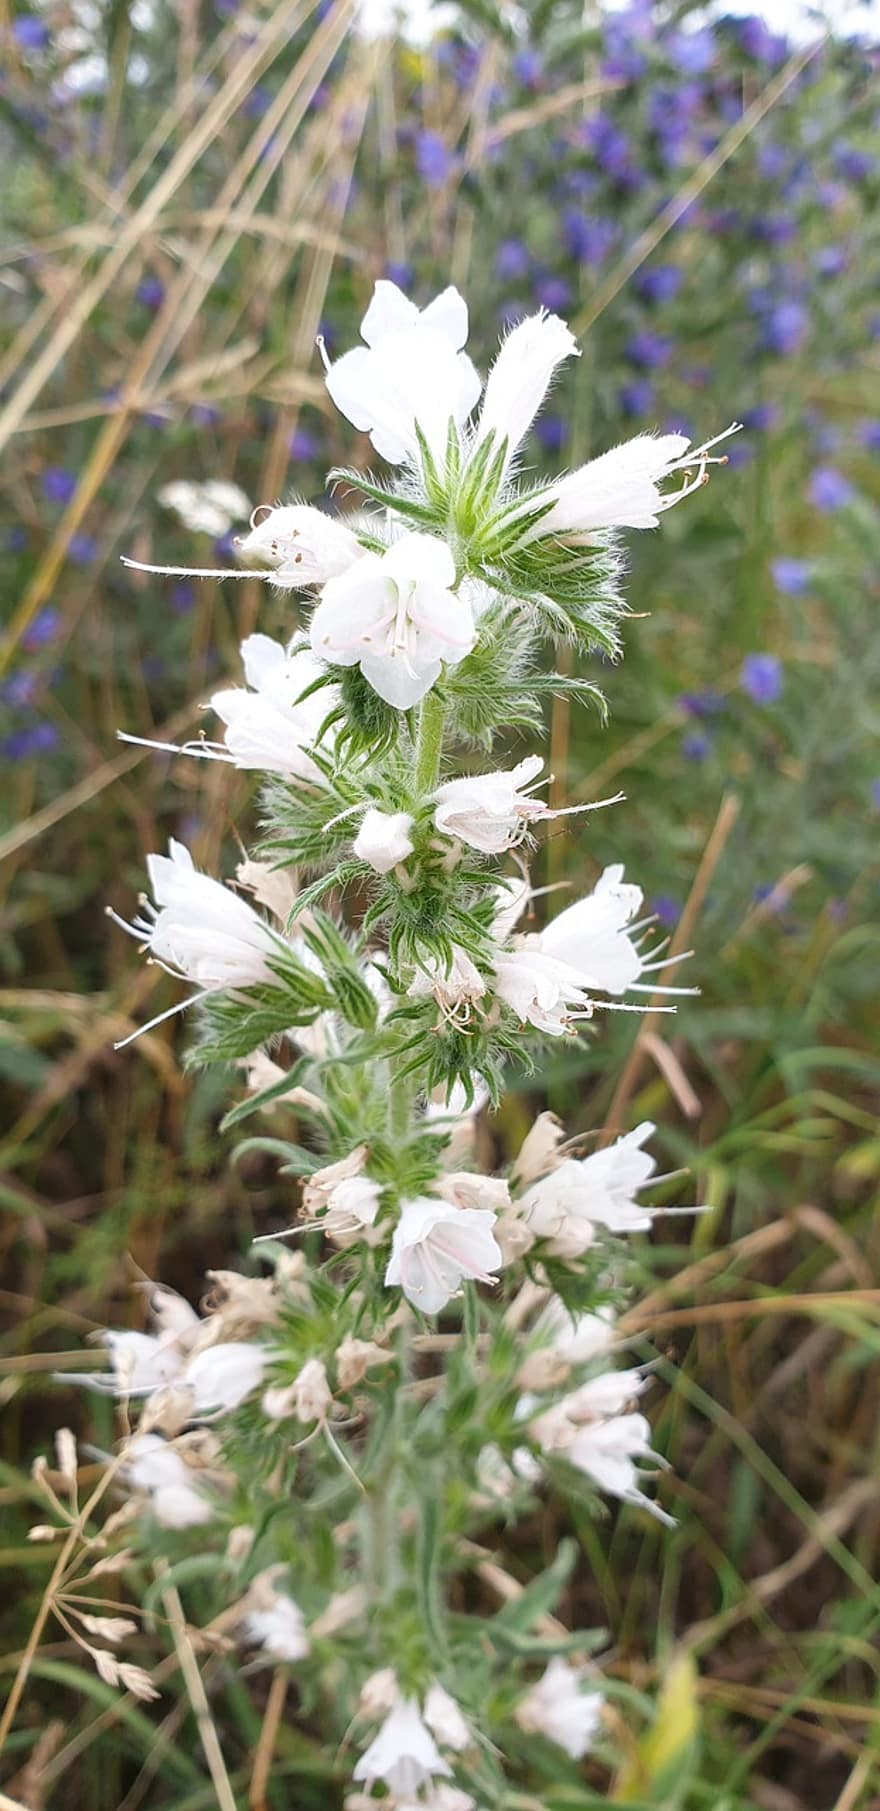 natternkopf bình thường, Đầu rắn trắng, hoa dại, những bông hoa, trắng, echium vulgare, đầu rắn, echium, raublattgewächs, họ boraginaceae, henry xanh